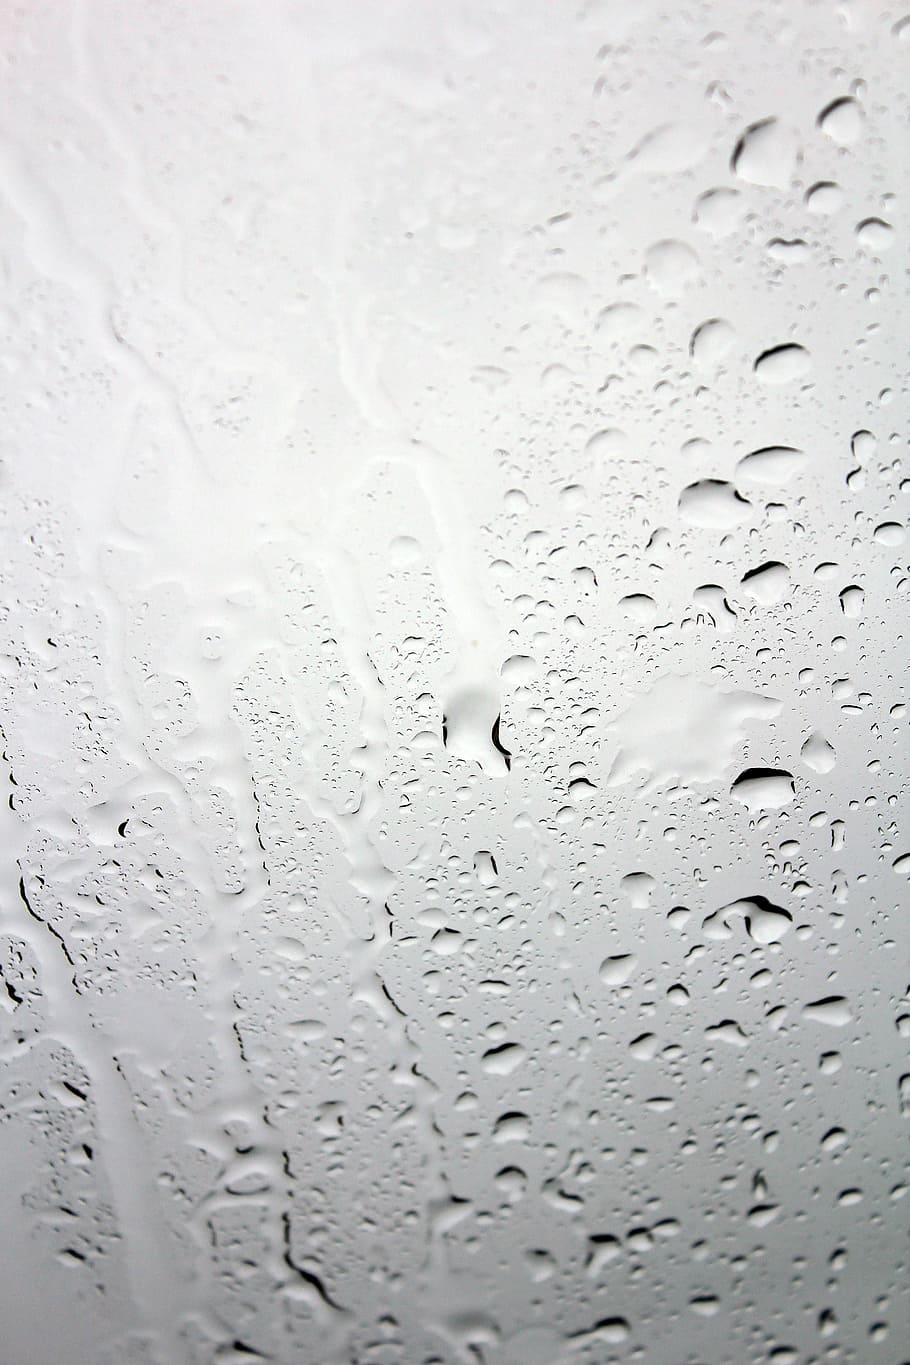 ガラス, 水滴, ディスク, ウィンドウ, 水, 点滴, ウェット, 雨, うつ病, 雨滴